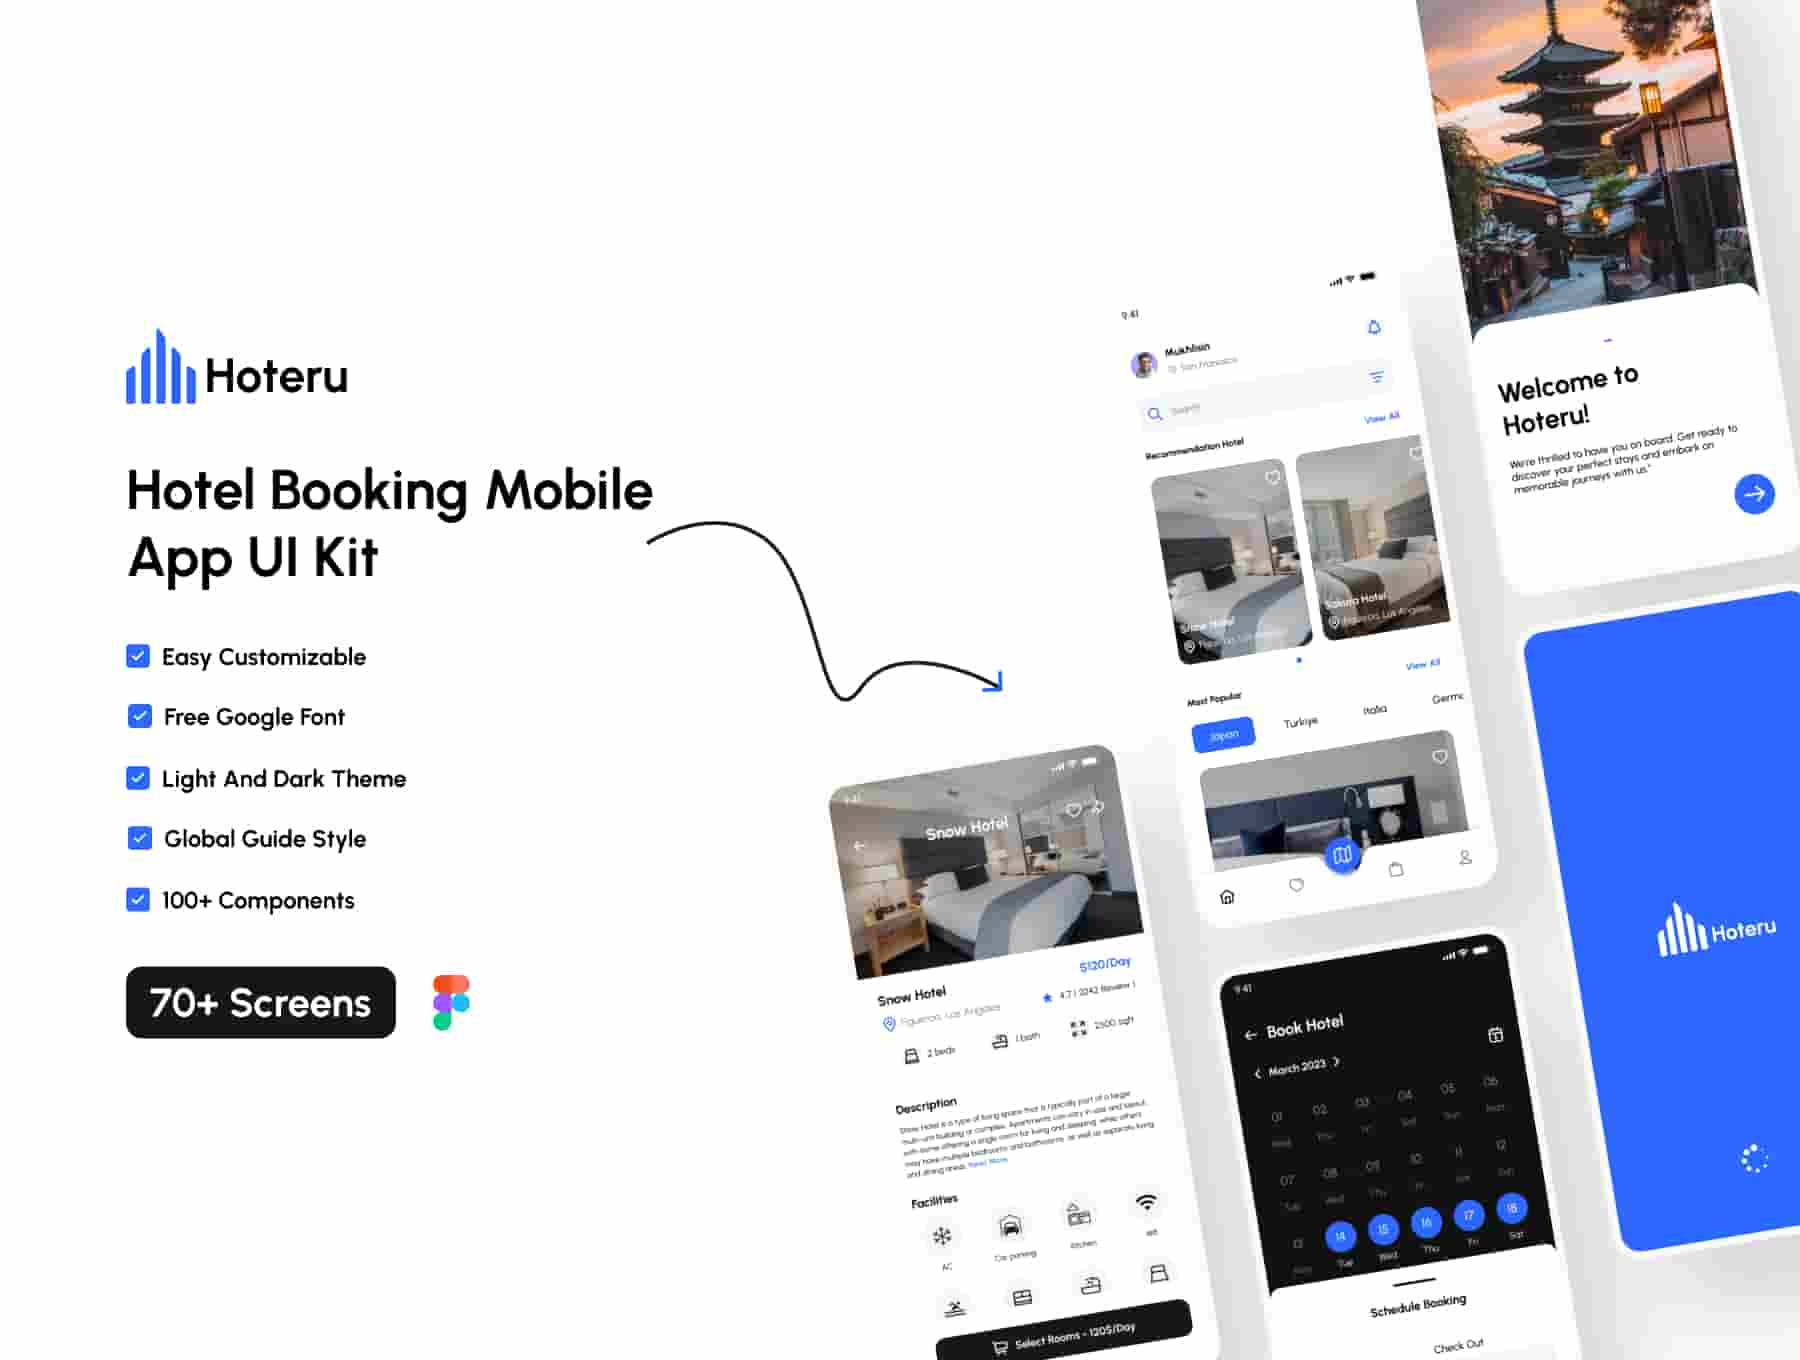 Hoteru - Hotel Booking Mobile App UI Kit